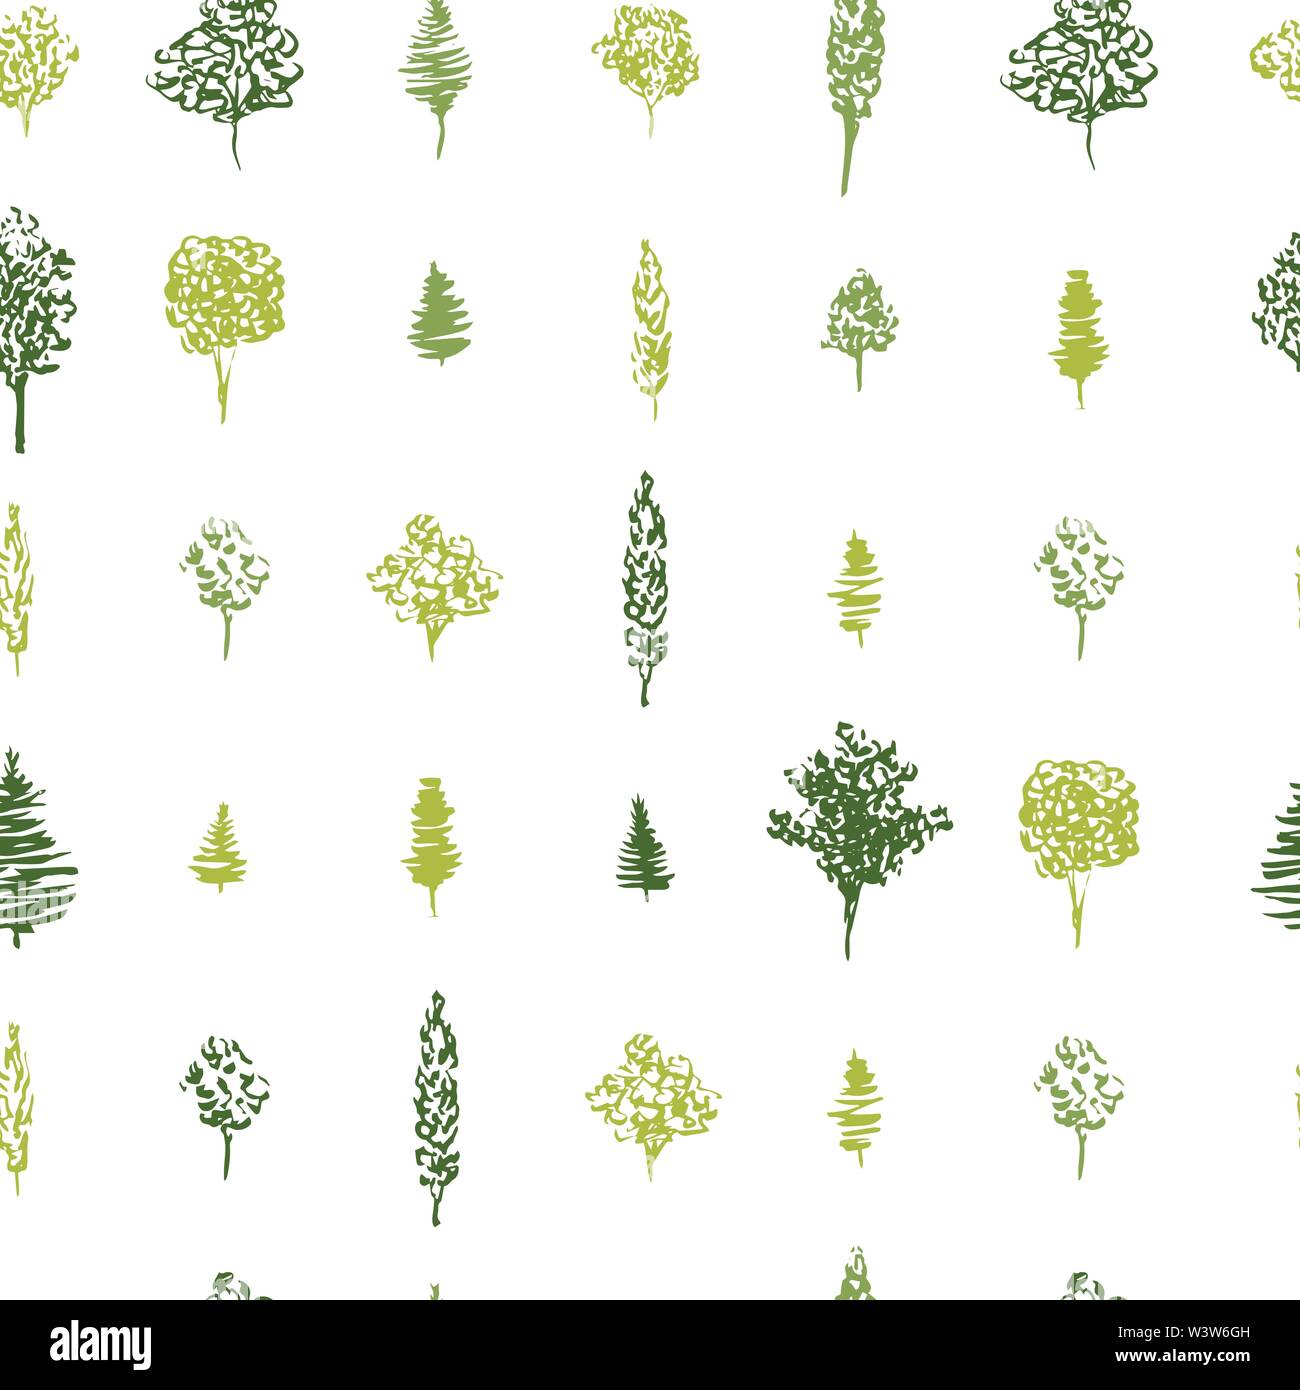 Motif de l'arbre vert transparente pour le motif du tissu. Schéma des arbres verts d'encre à la main. Vector illustration des différents types d'arbres forestiers en répétition géométrique Illustration de Vecteur